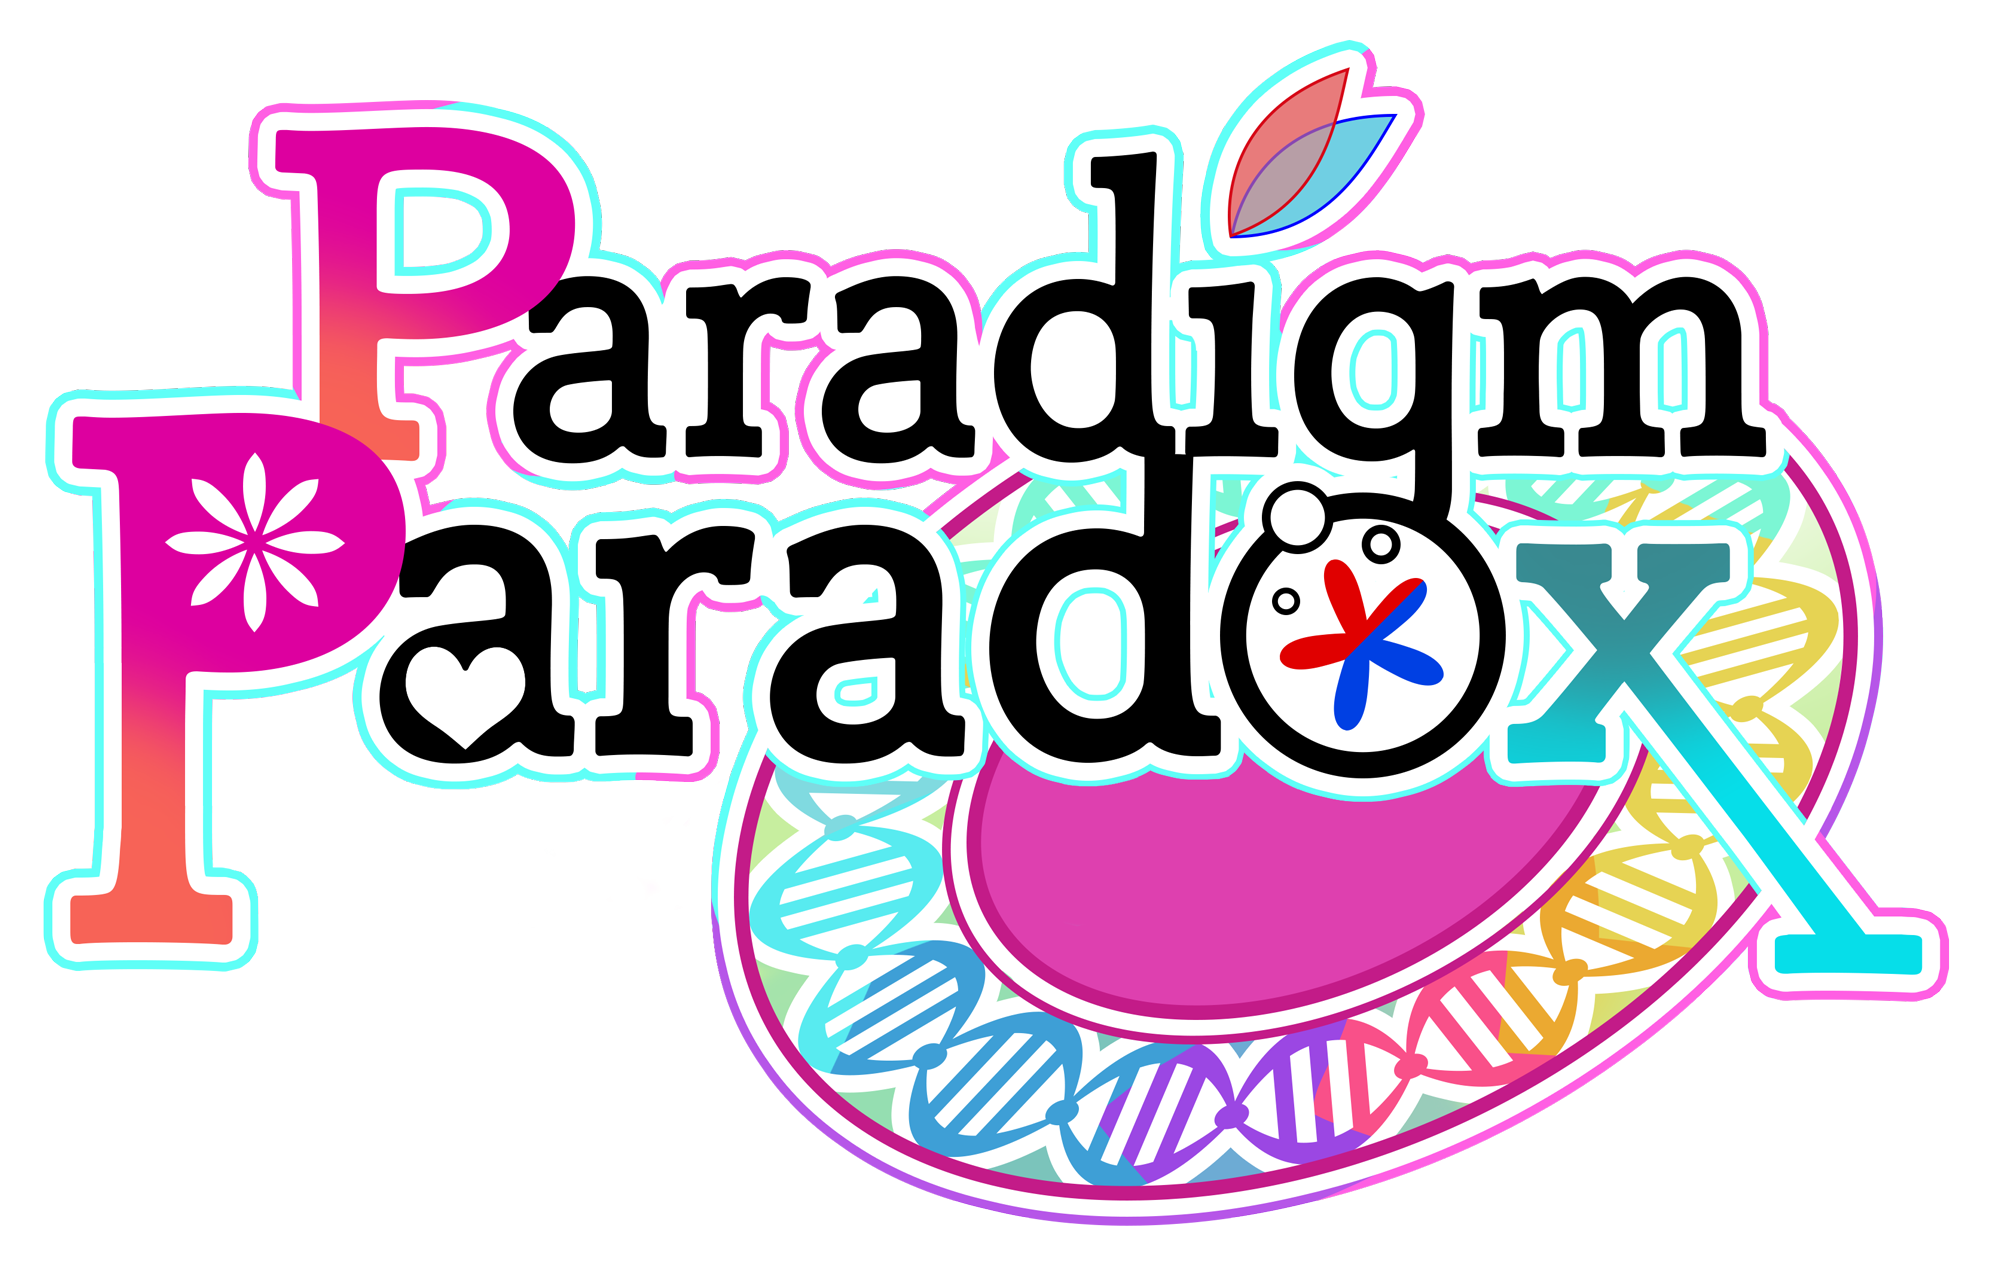 Paradigm Paradox | Official Site